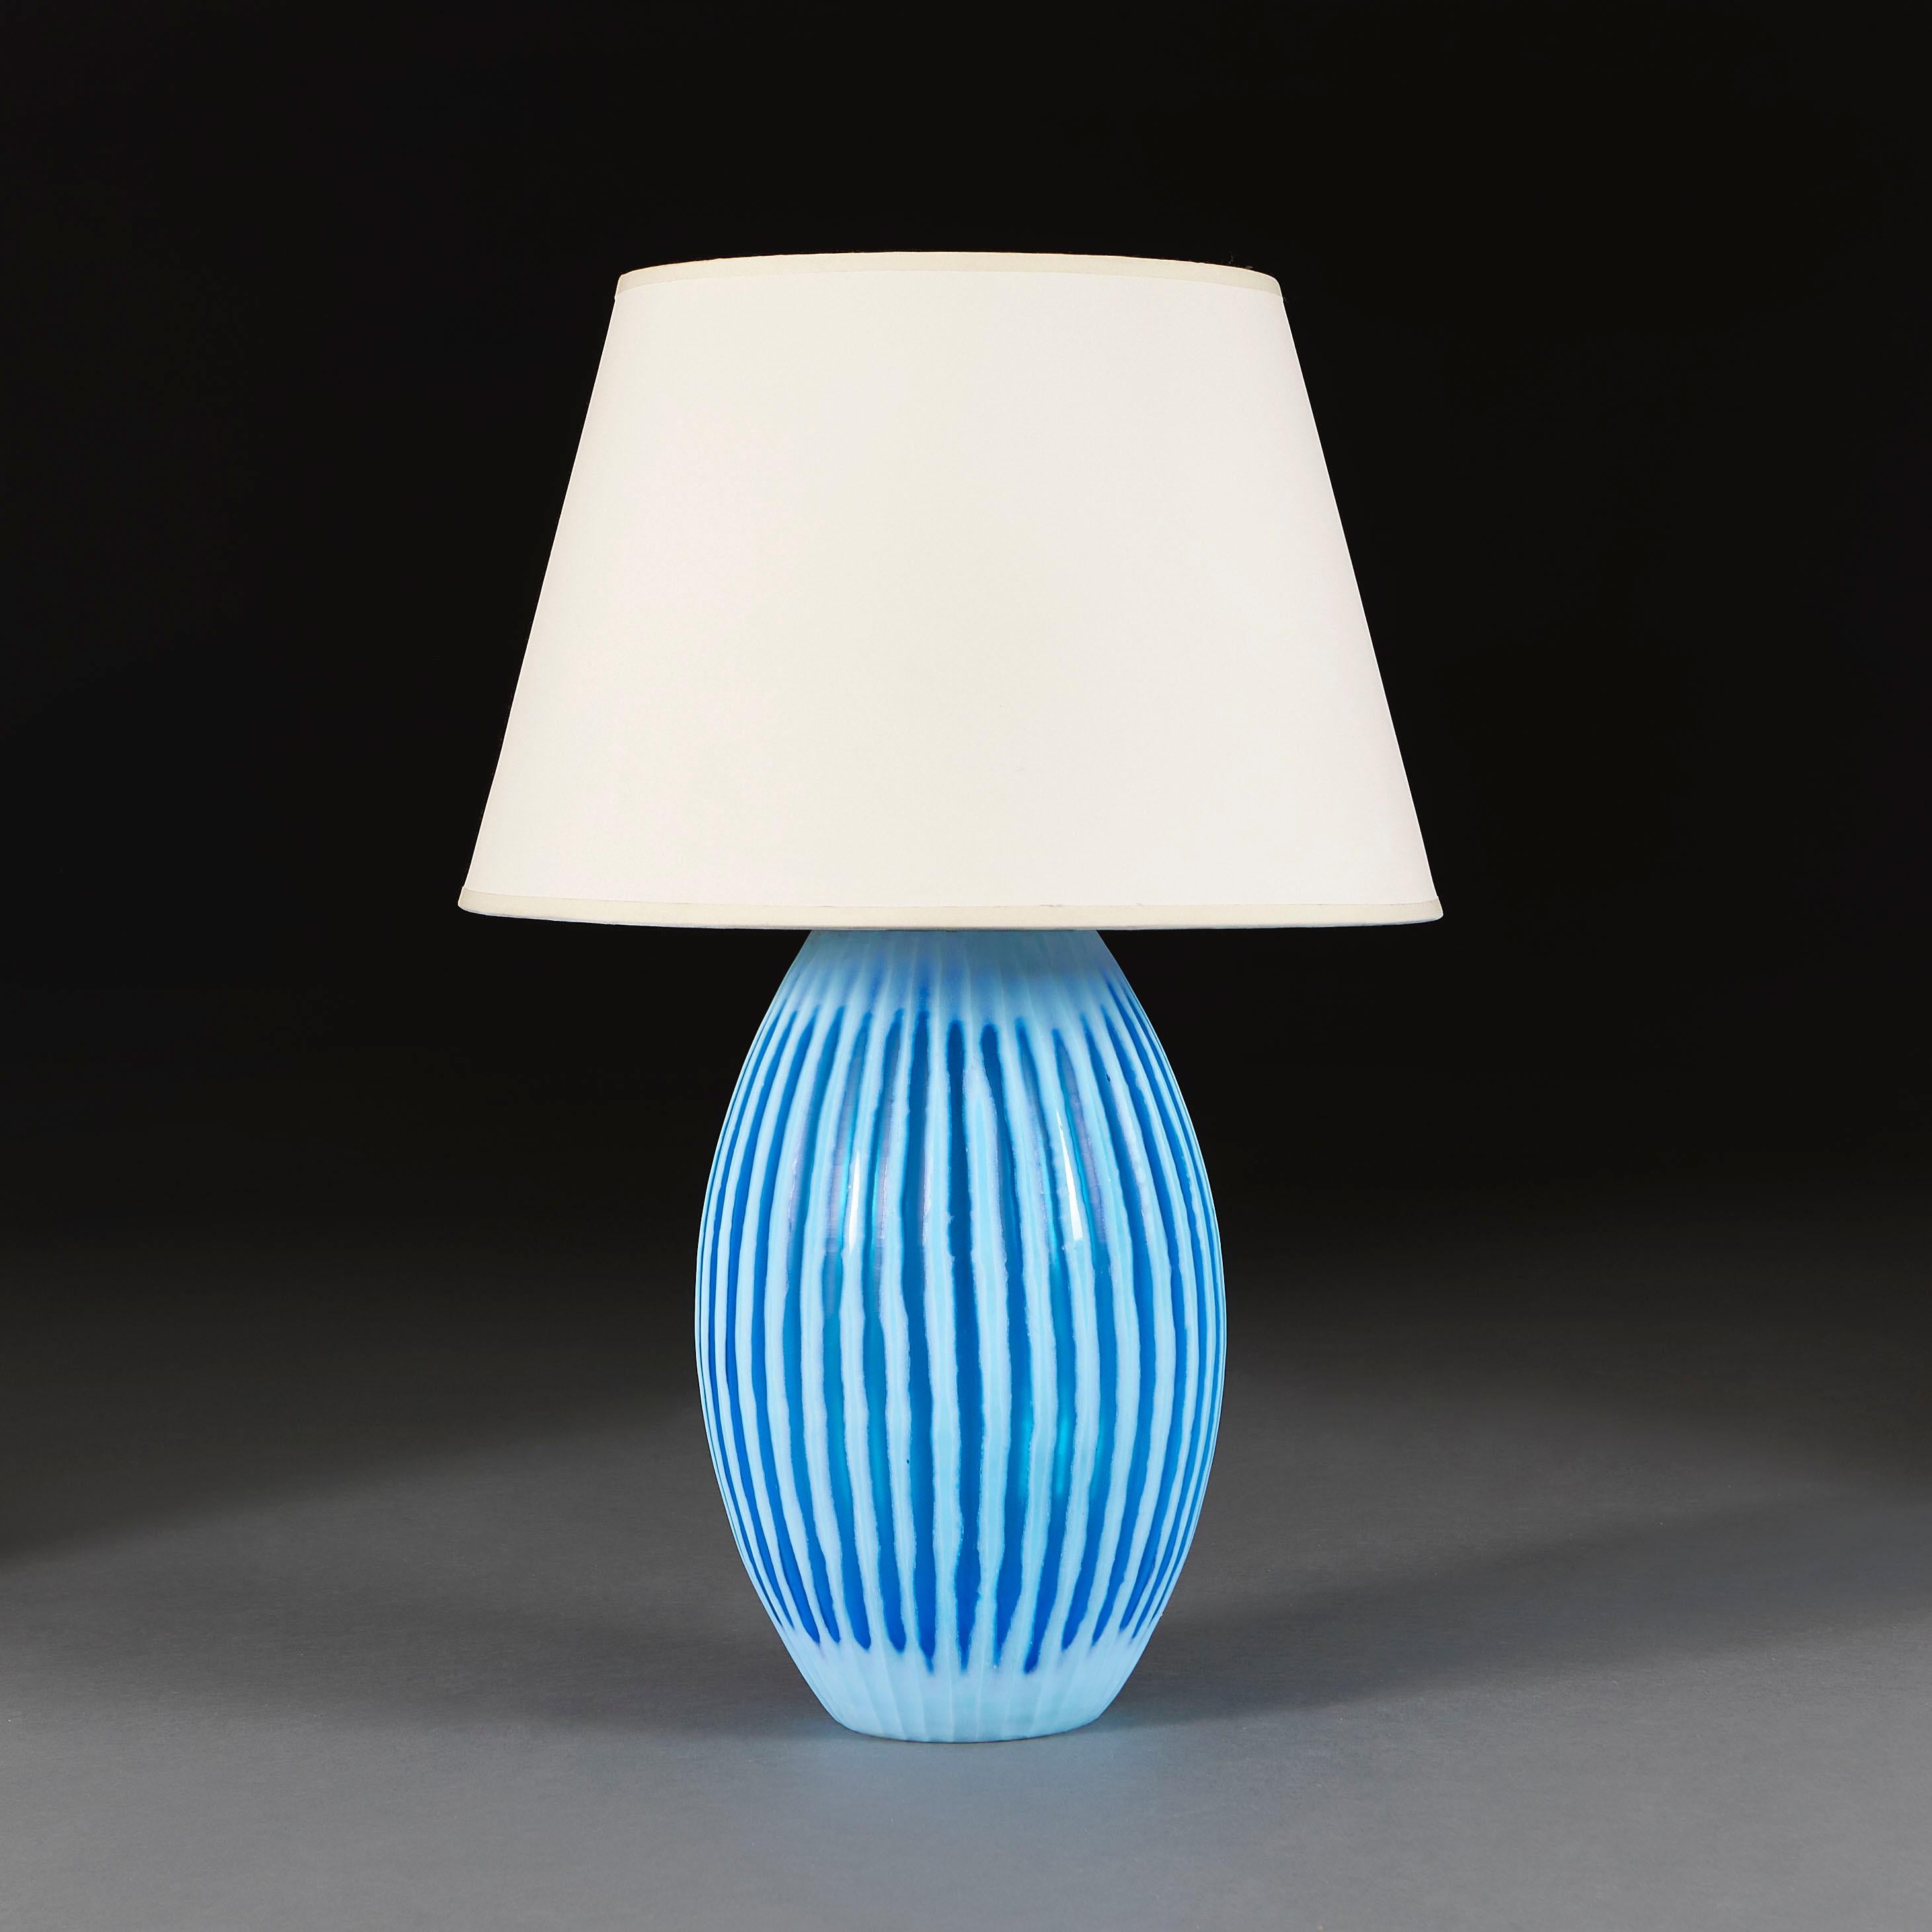 Italie, vers 1960

Un grand vase en verre bleu de Murano du milieu du siècle, de forme ovale à godrons, aujourd'hui transformé en lampe.

Hauteur du vase 38.00cm
Hauteur avec abat-jour 67.00cm
Diamètre de la base 13.00cm
Diamètre du corps